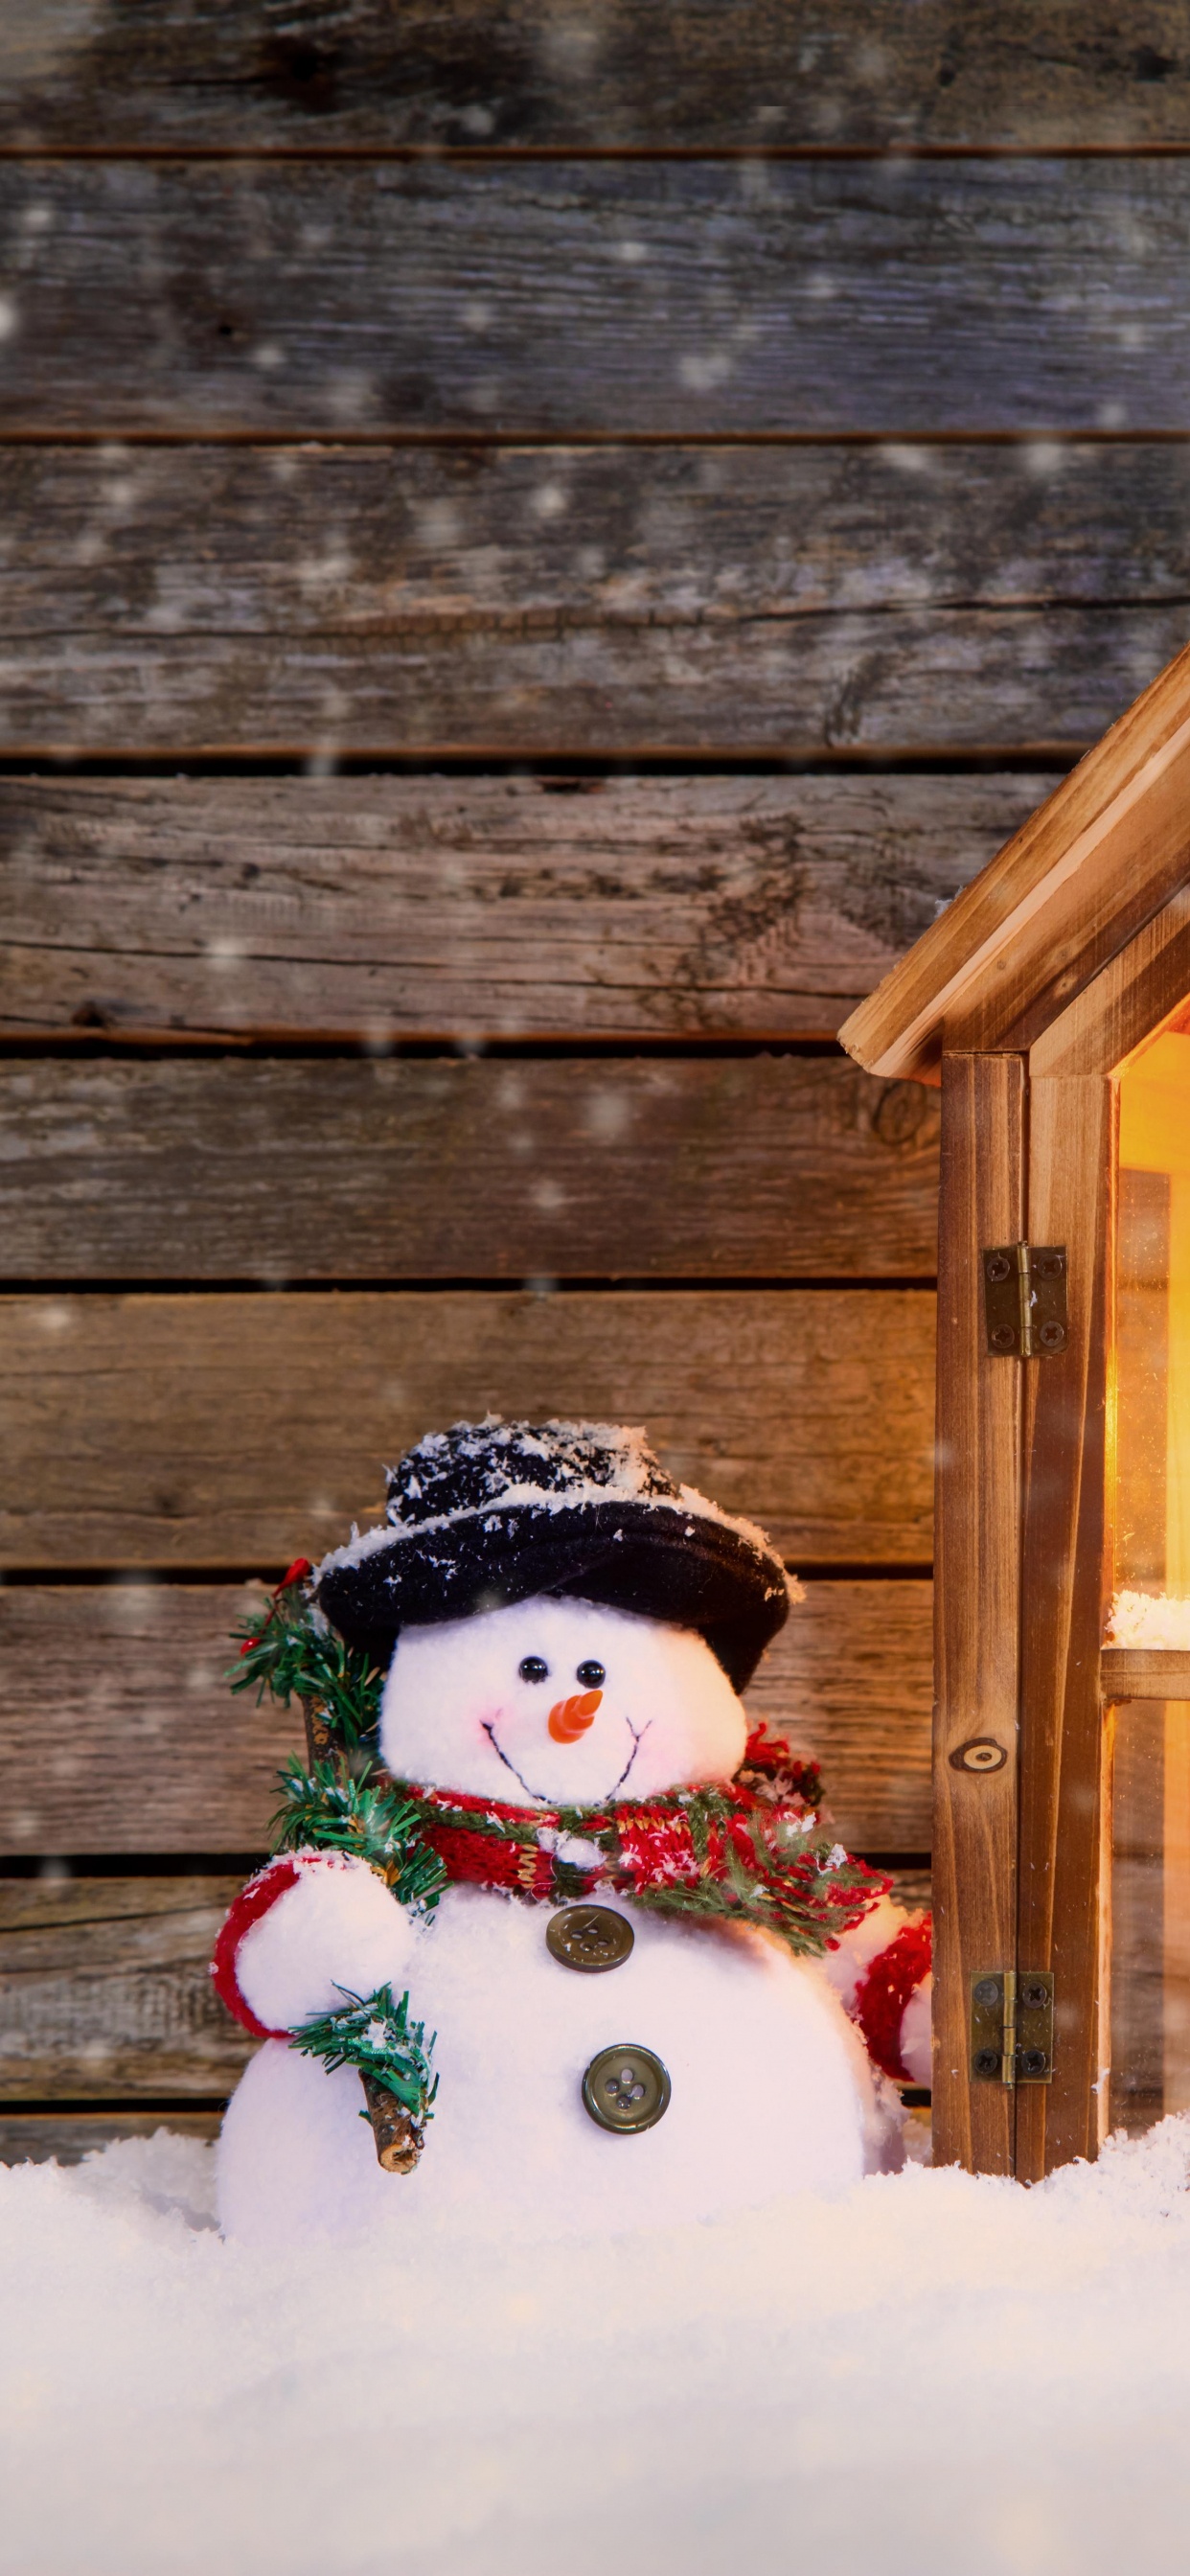 圣诞节那天, 雪人, 圣诞装饰, 圣诞节的装饰品, 冬天 壁纸 1242x2688 允许